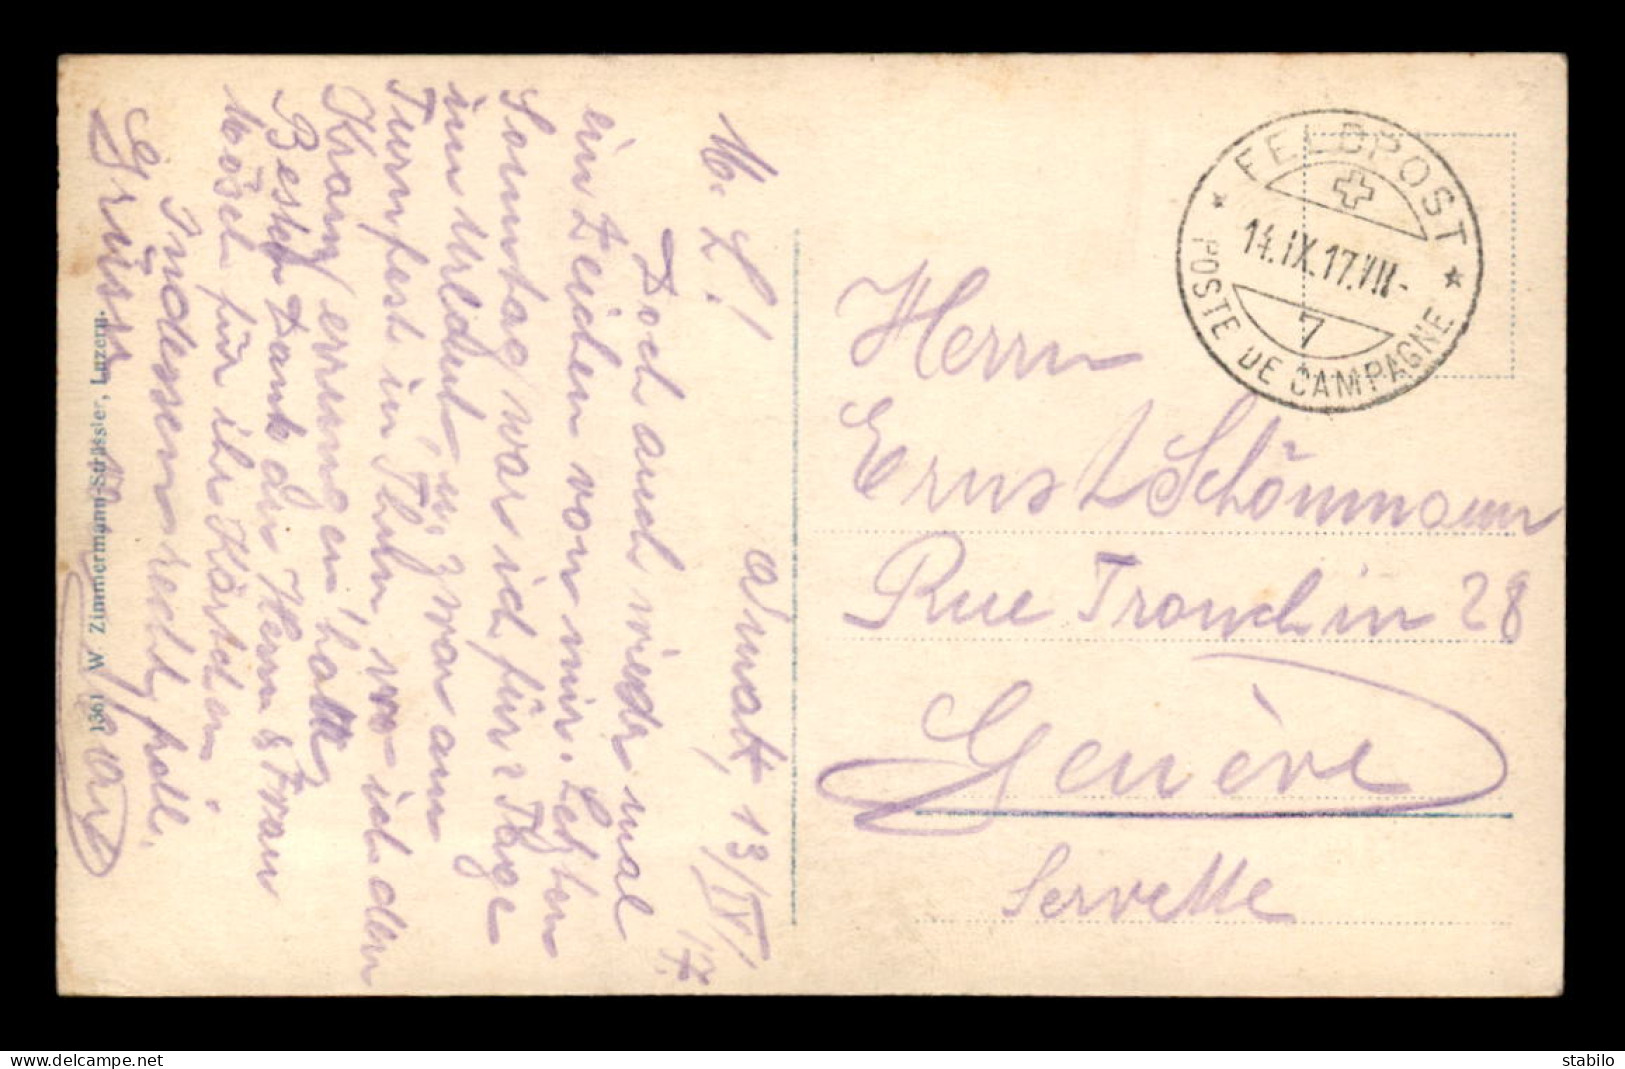 SUISSE - CACHET FELDPOST - POSTE DE CAMPAGNE DU 14.9.1917 - Marcophilie